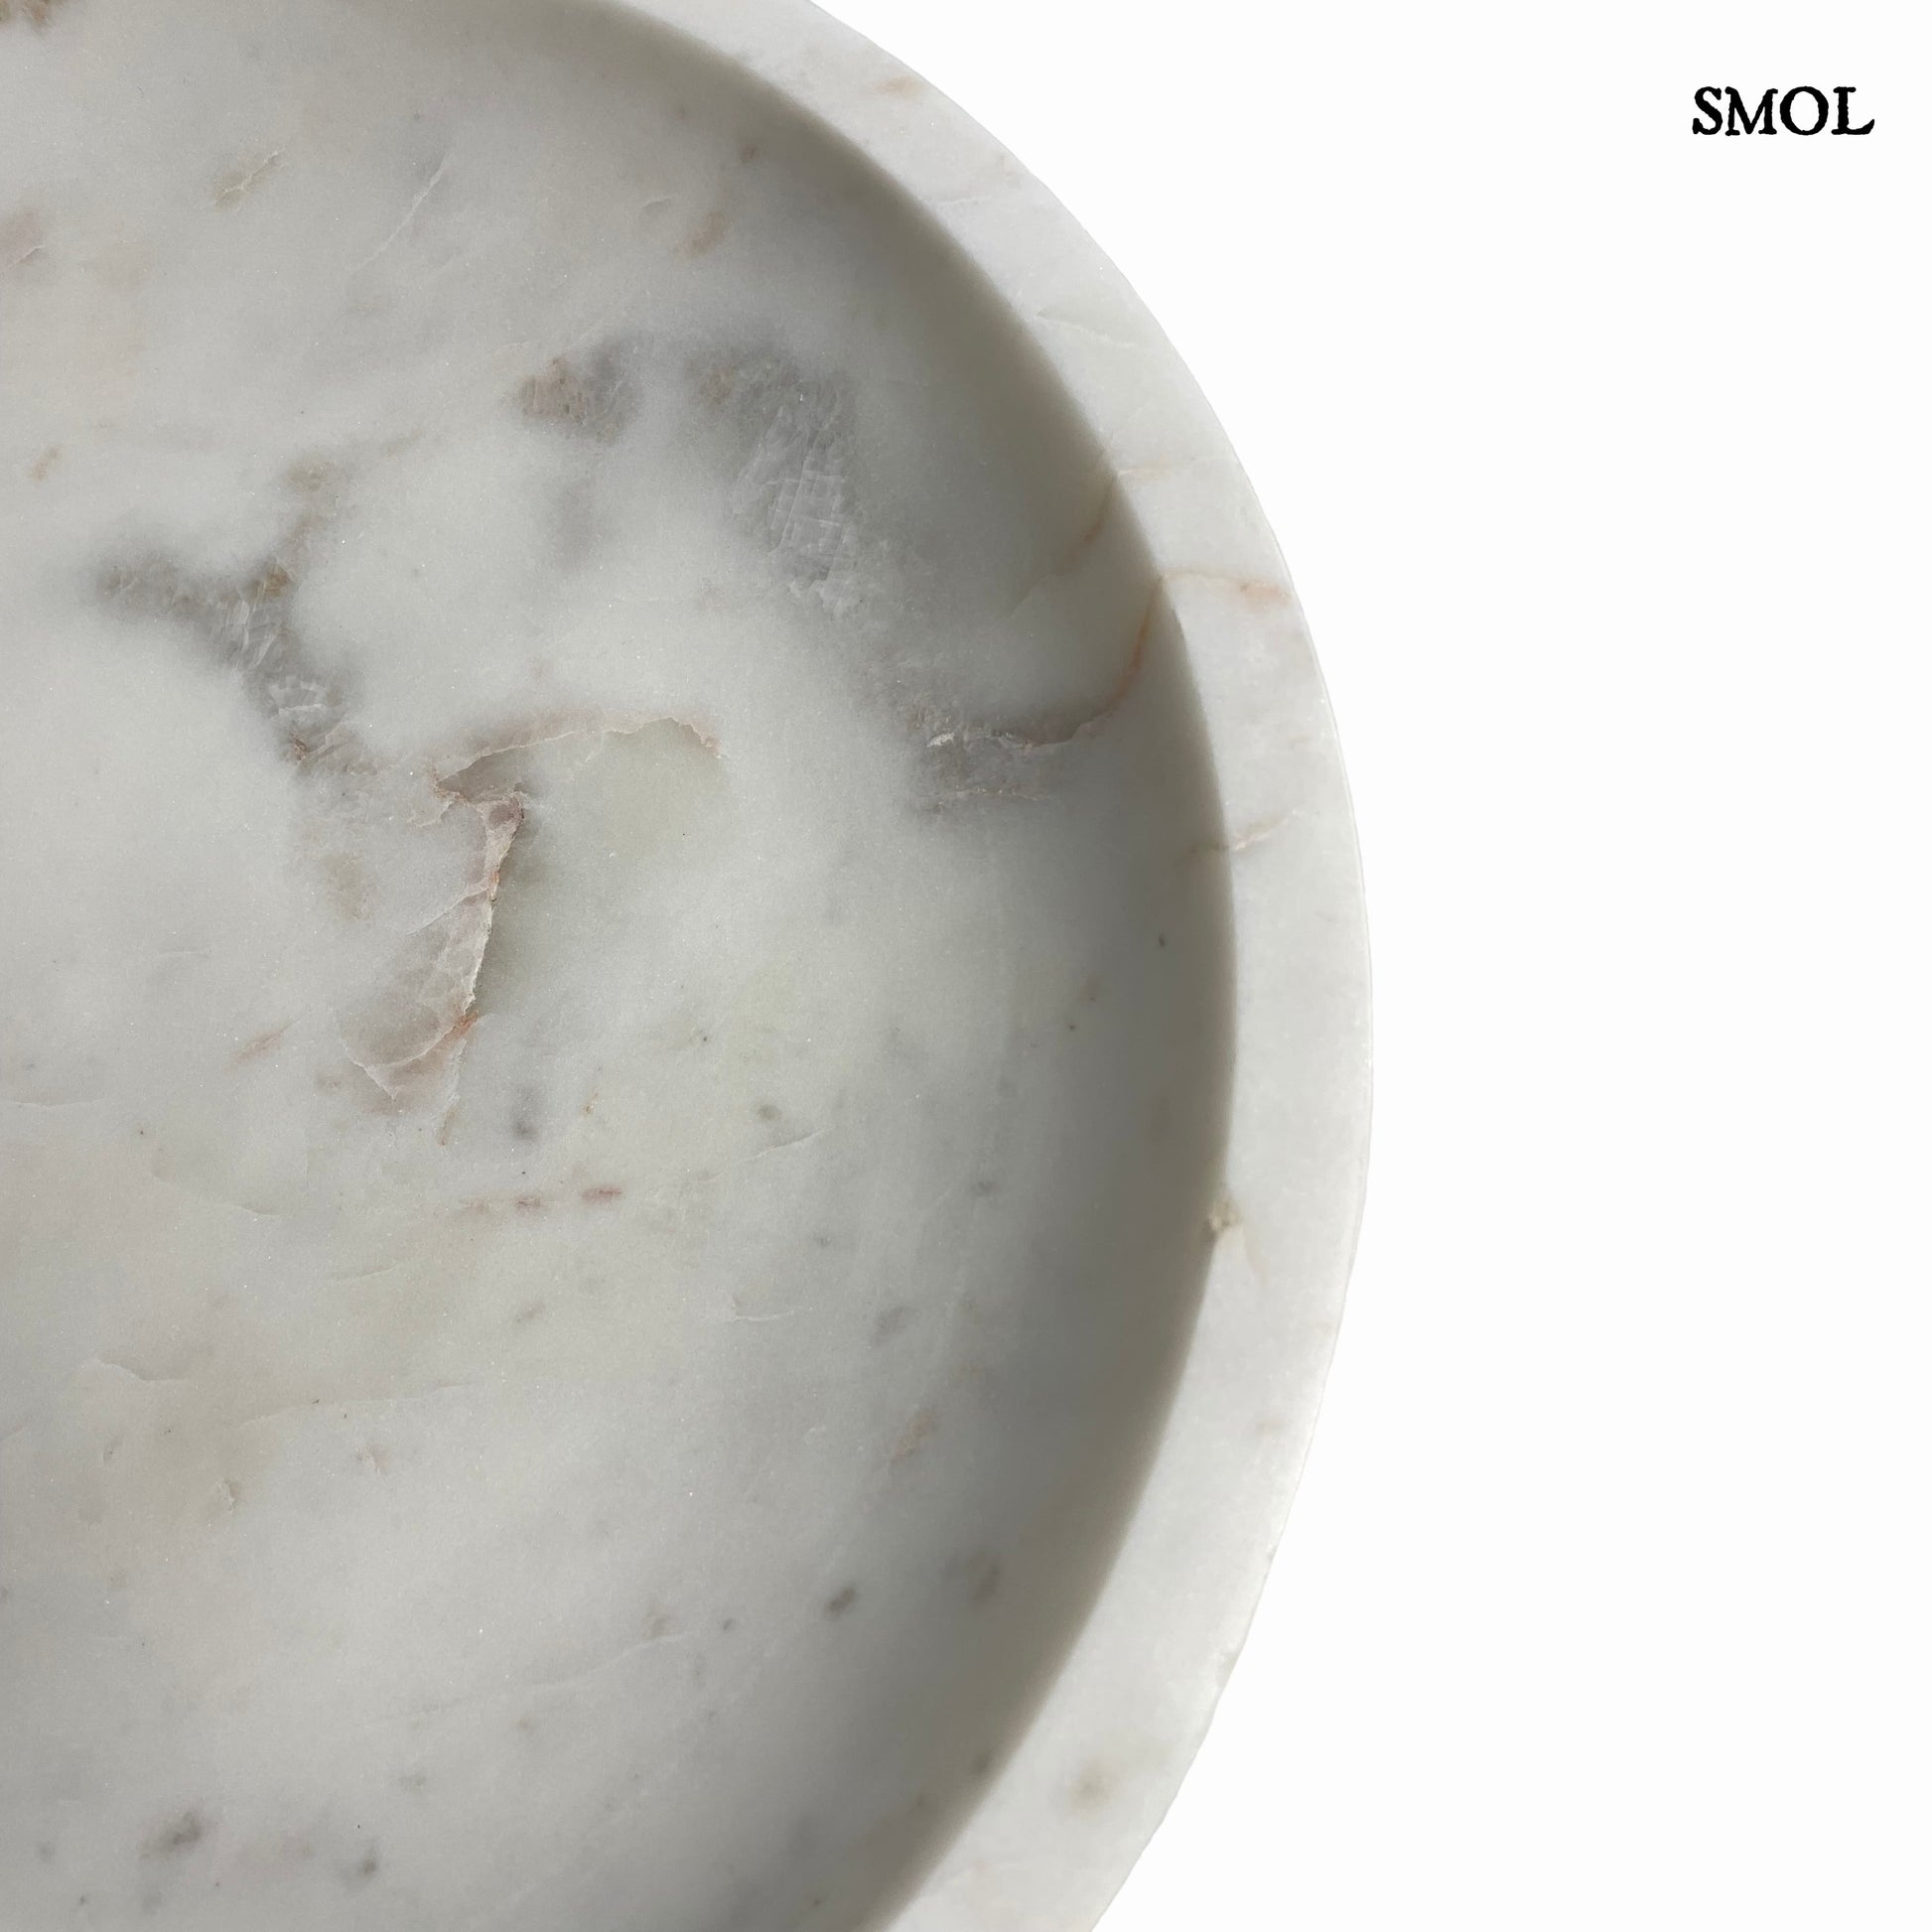 smol.hu - nord fehér márvány dísztál 30 cm termékképe